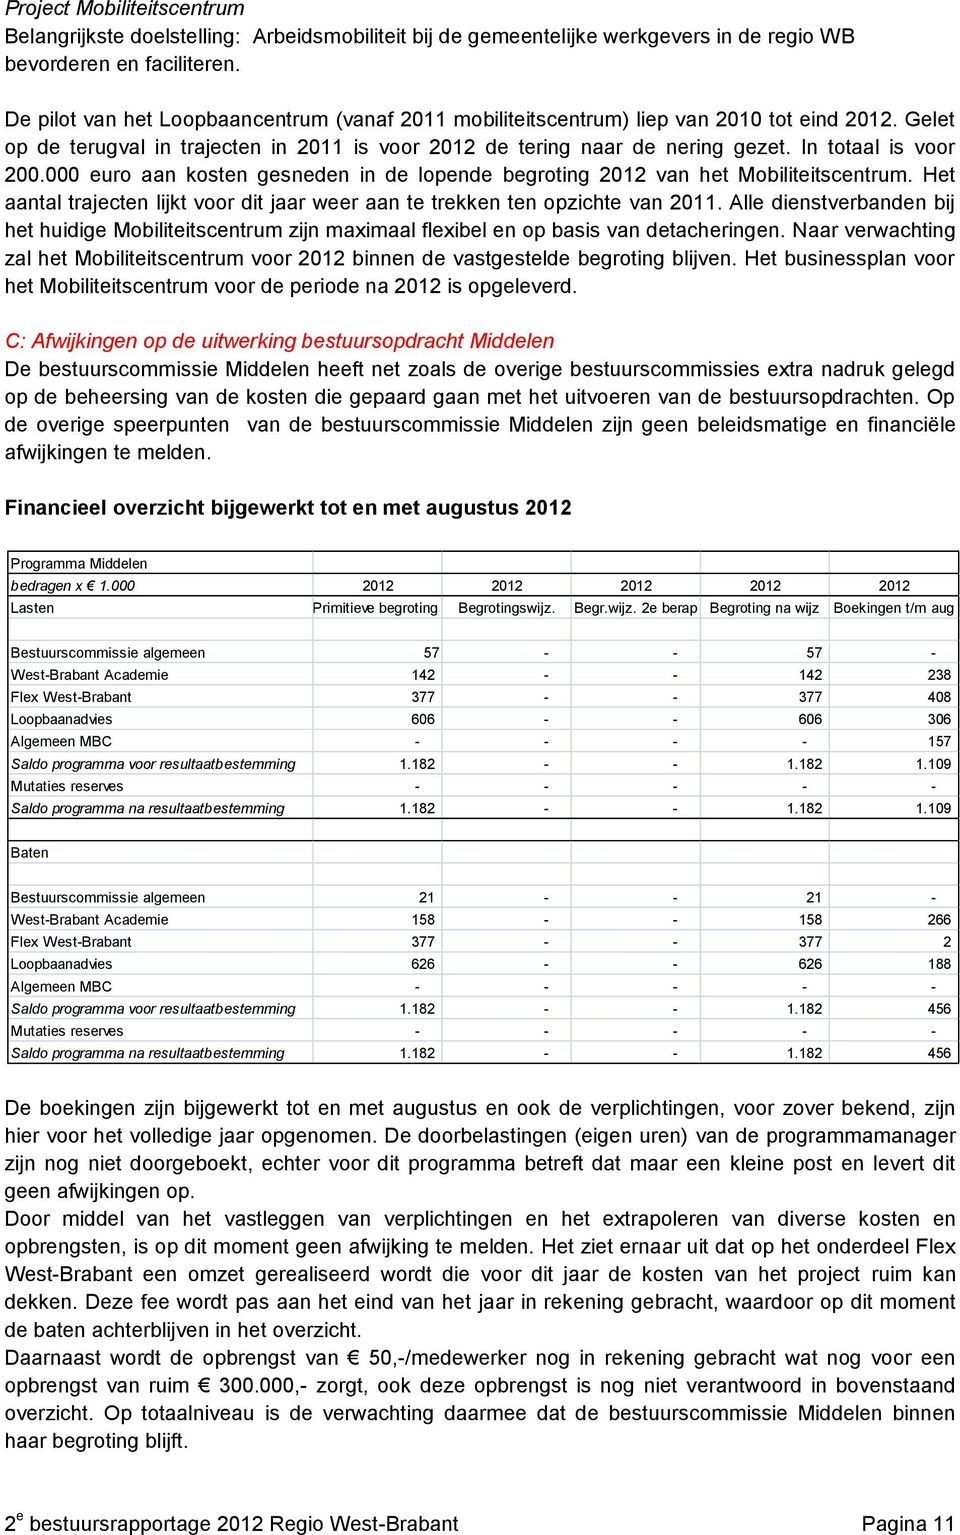 In totaal is voor 200.000 euro aan kosten gesneden in de lopende begroting 2012 van het Mobiliteitscentrum. Het aantal trajecten lijkt voor dit jaar weer aan te trekken ten opzichte van 2011.